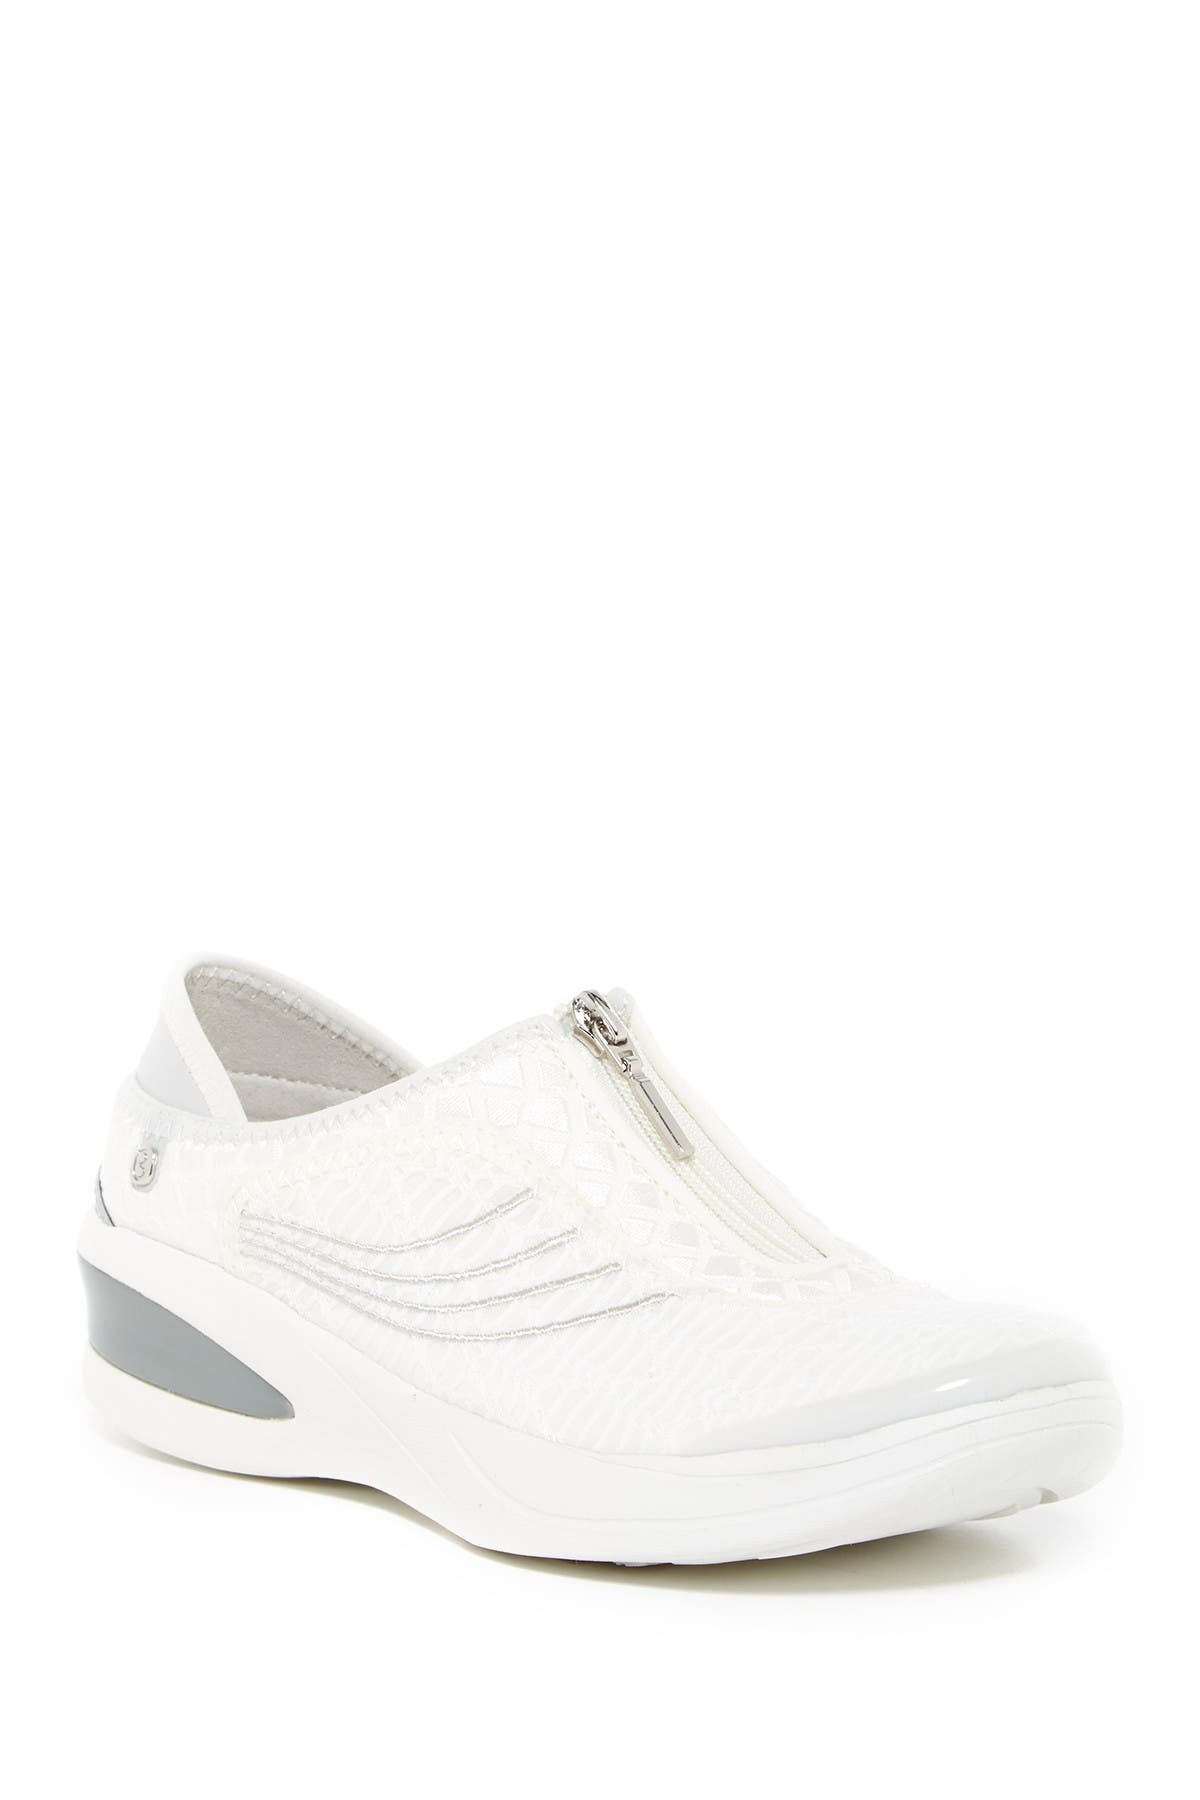 bzees fancy sneakers white